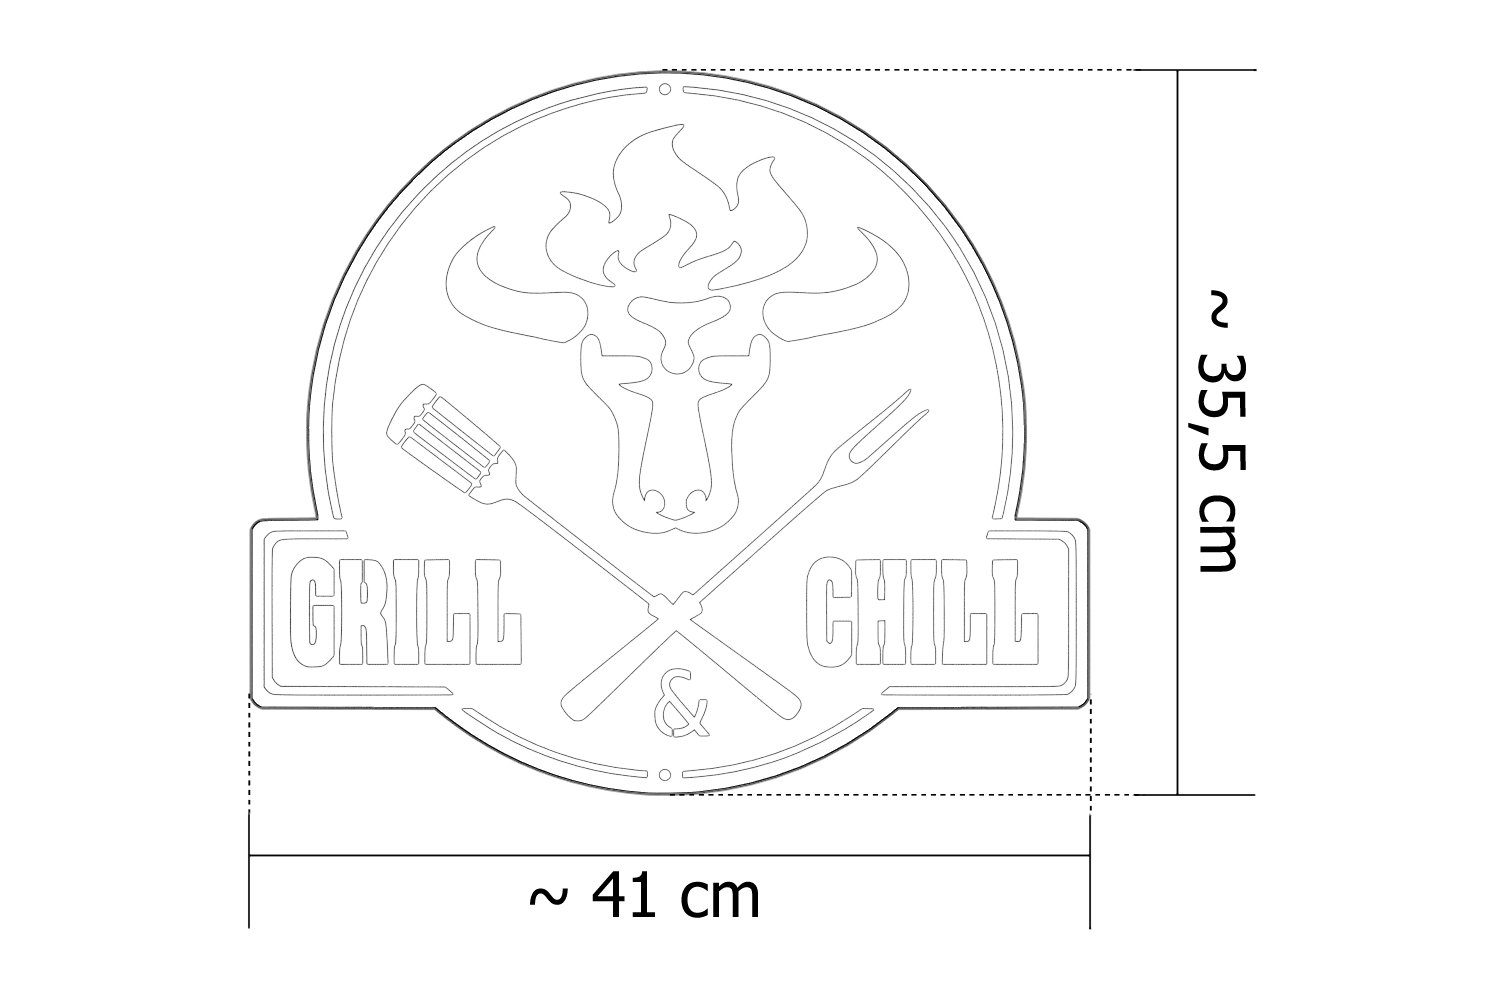 BBQ teileplus24 & Antik BBQ CG02 Schild Grill Chill Gartenschild Wanddekoobjekt Kupfer Metallschild Grill Stier